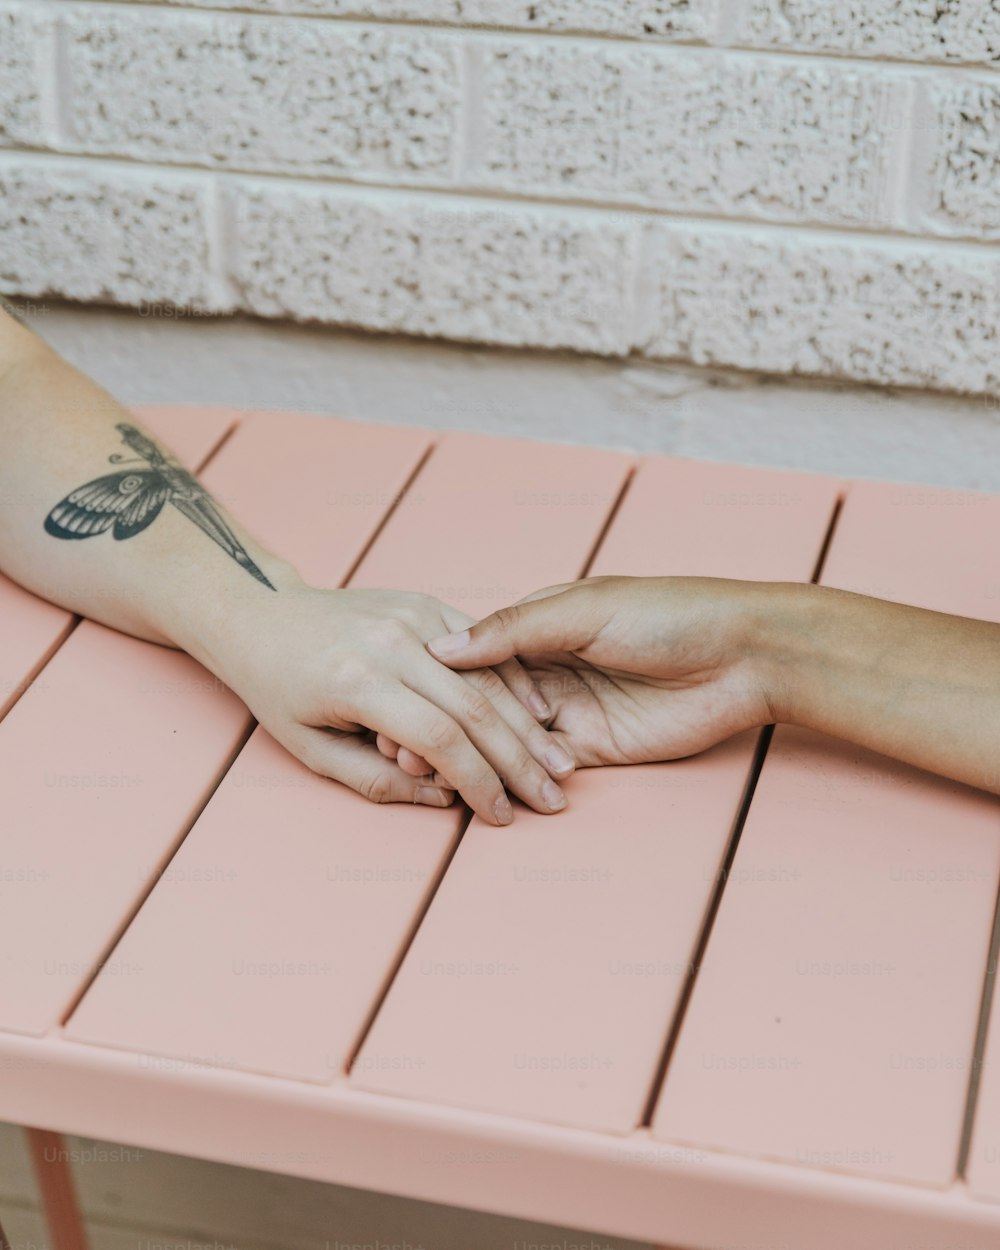 une personne avec un tatouage de libellule sur le bras assise sur un banc rose